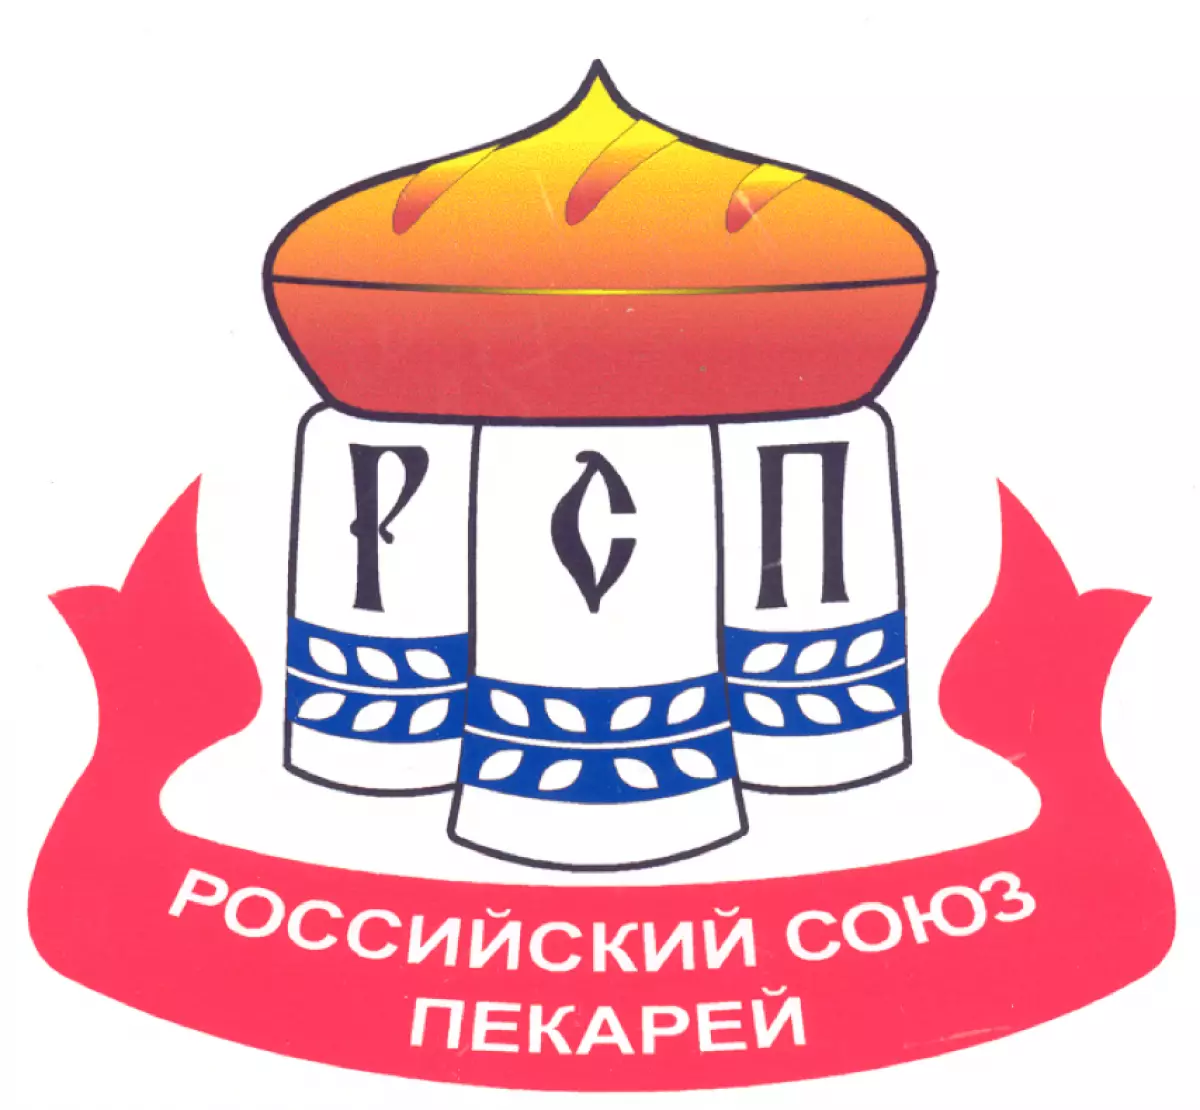 Одно из важных направлений работы – создание региональных отделений Российского союза пекарей.